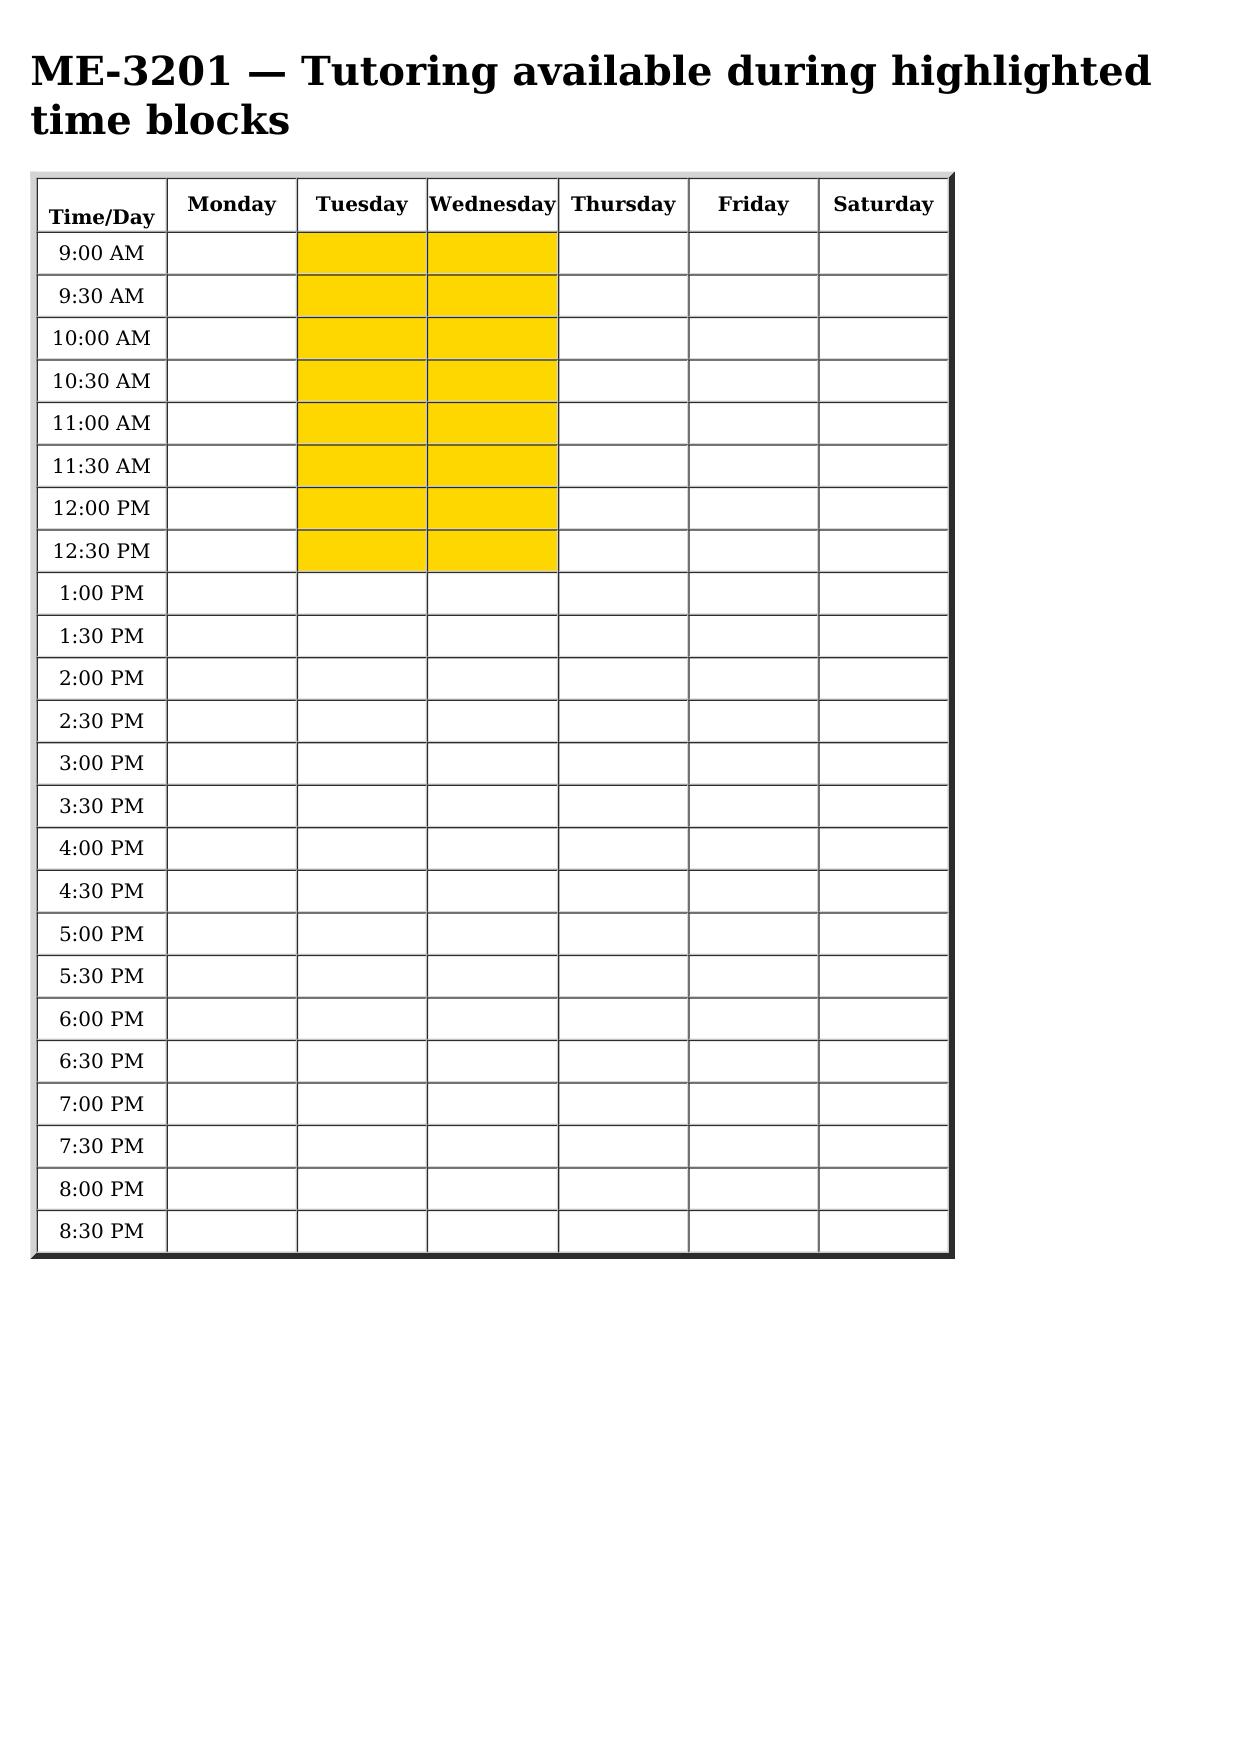 me 3201 schedule